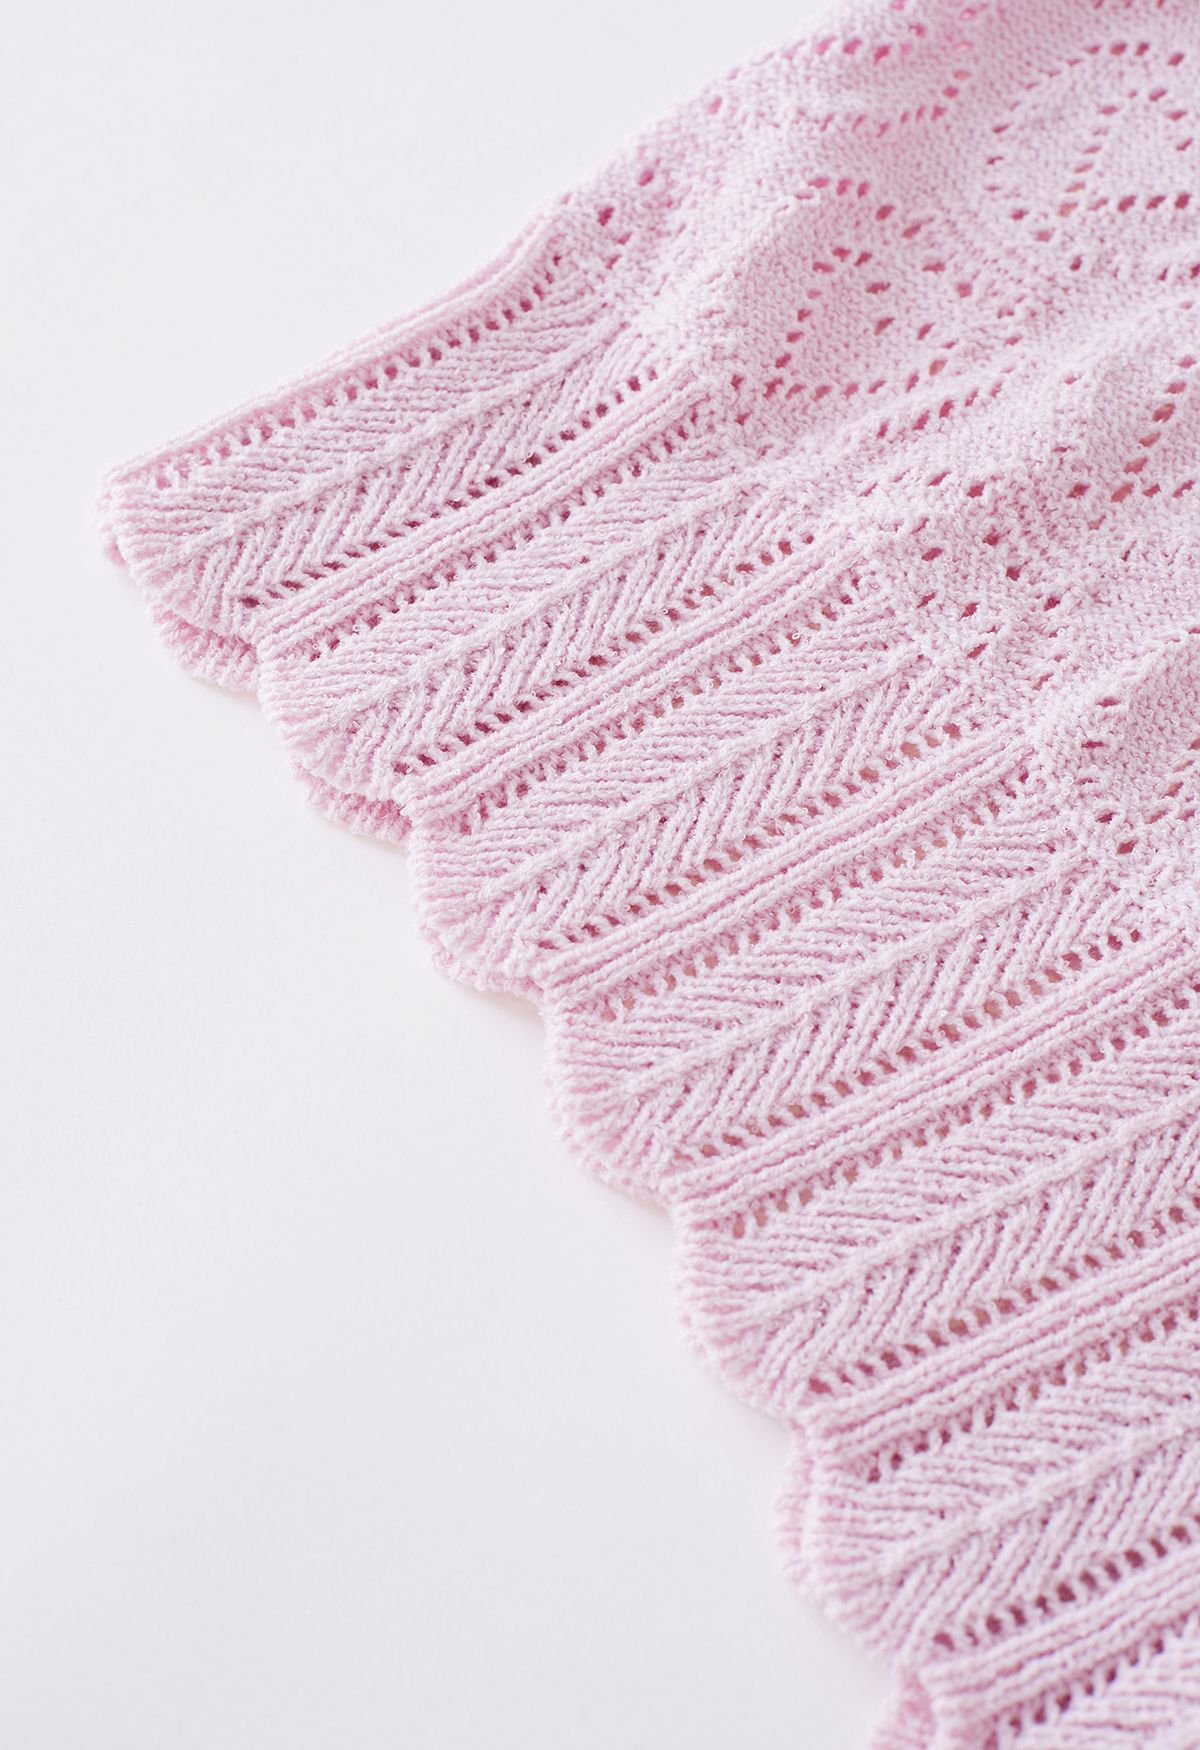 Heart-Shape Pointelle Knit Top in Pink